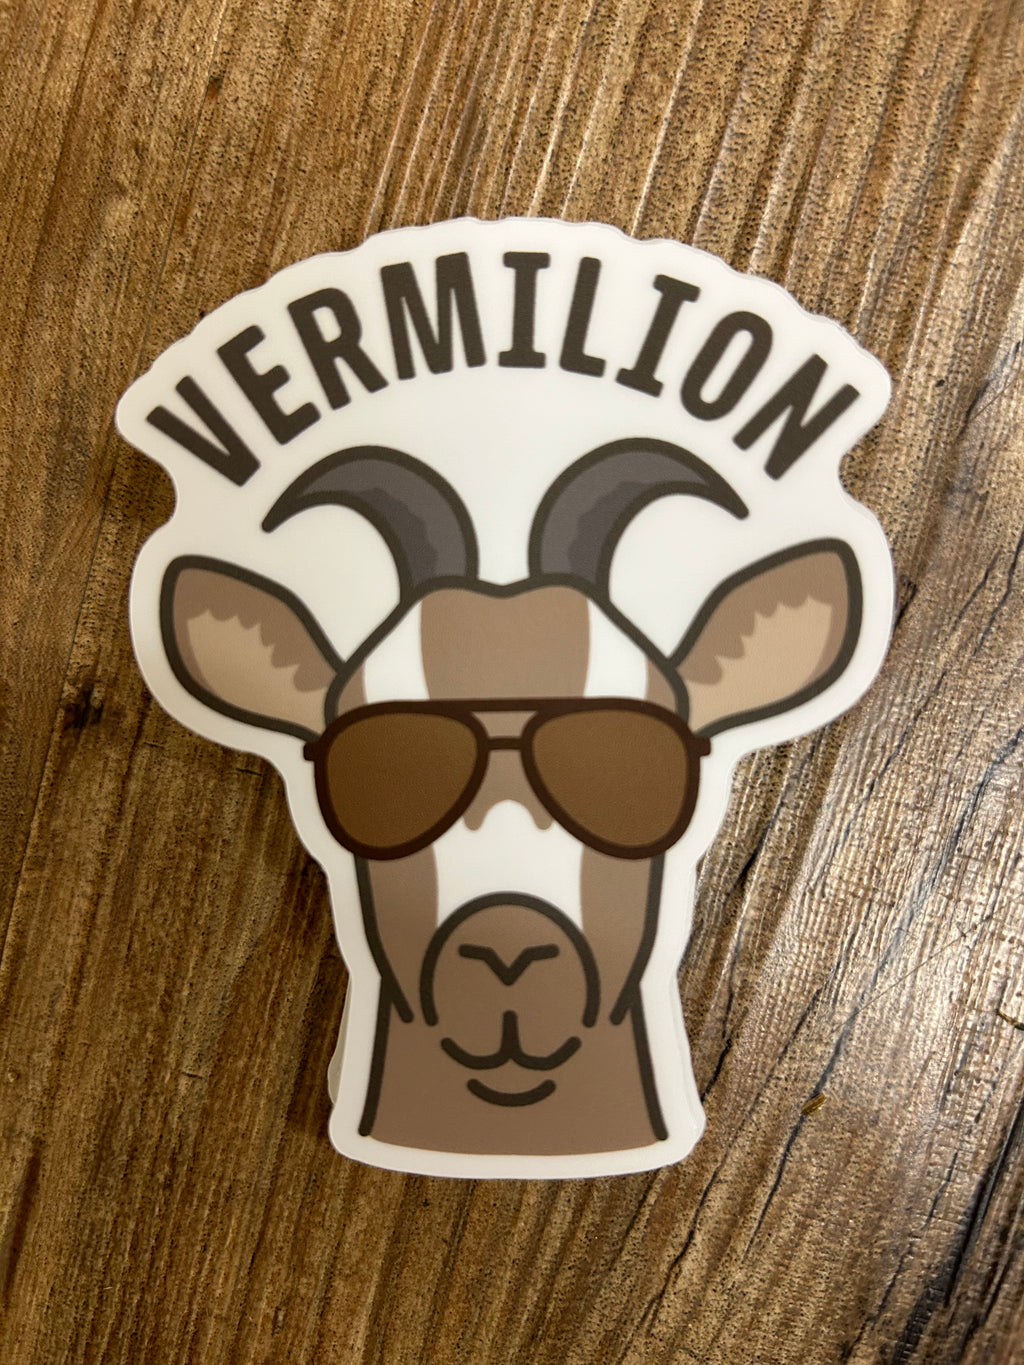 Sunglasses Goat Vermilion Sticker - Lighten Up Shop